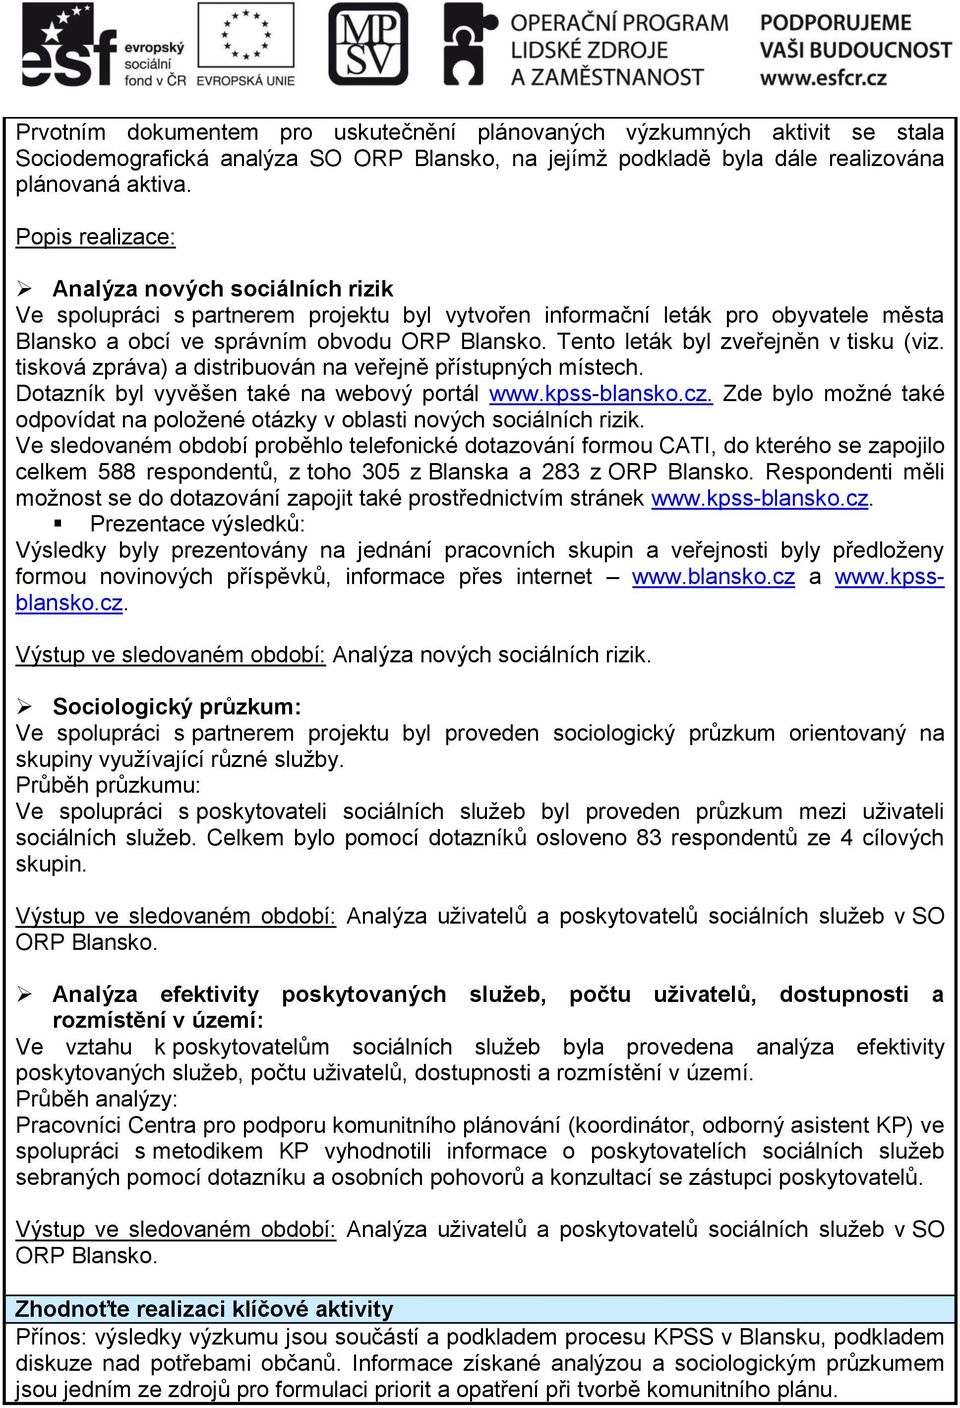 Tento leták byl zveřejněn v tisku (viz. tisková zpráva) a distribuován na veřejně přístupných místech. Dotazník byl vyvěšen také na webový portál www.kpss-blansko.cz.